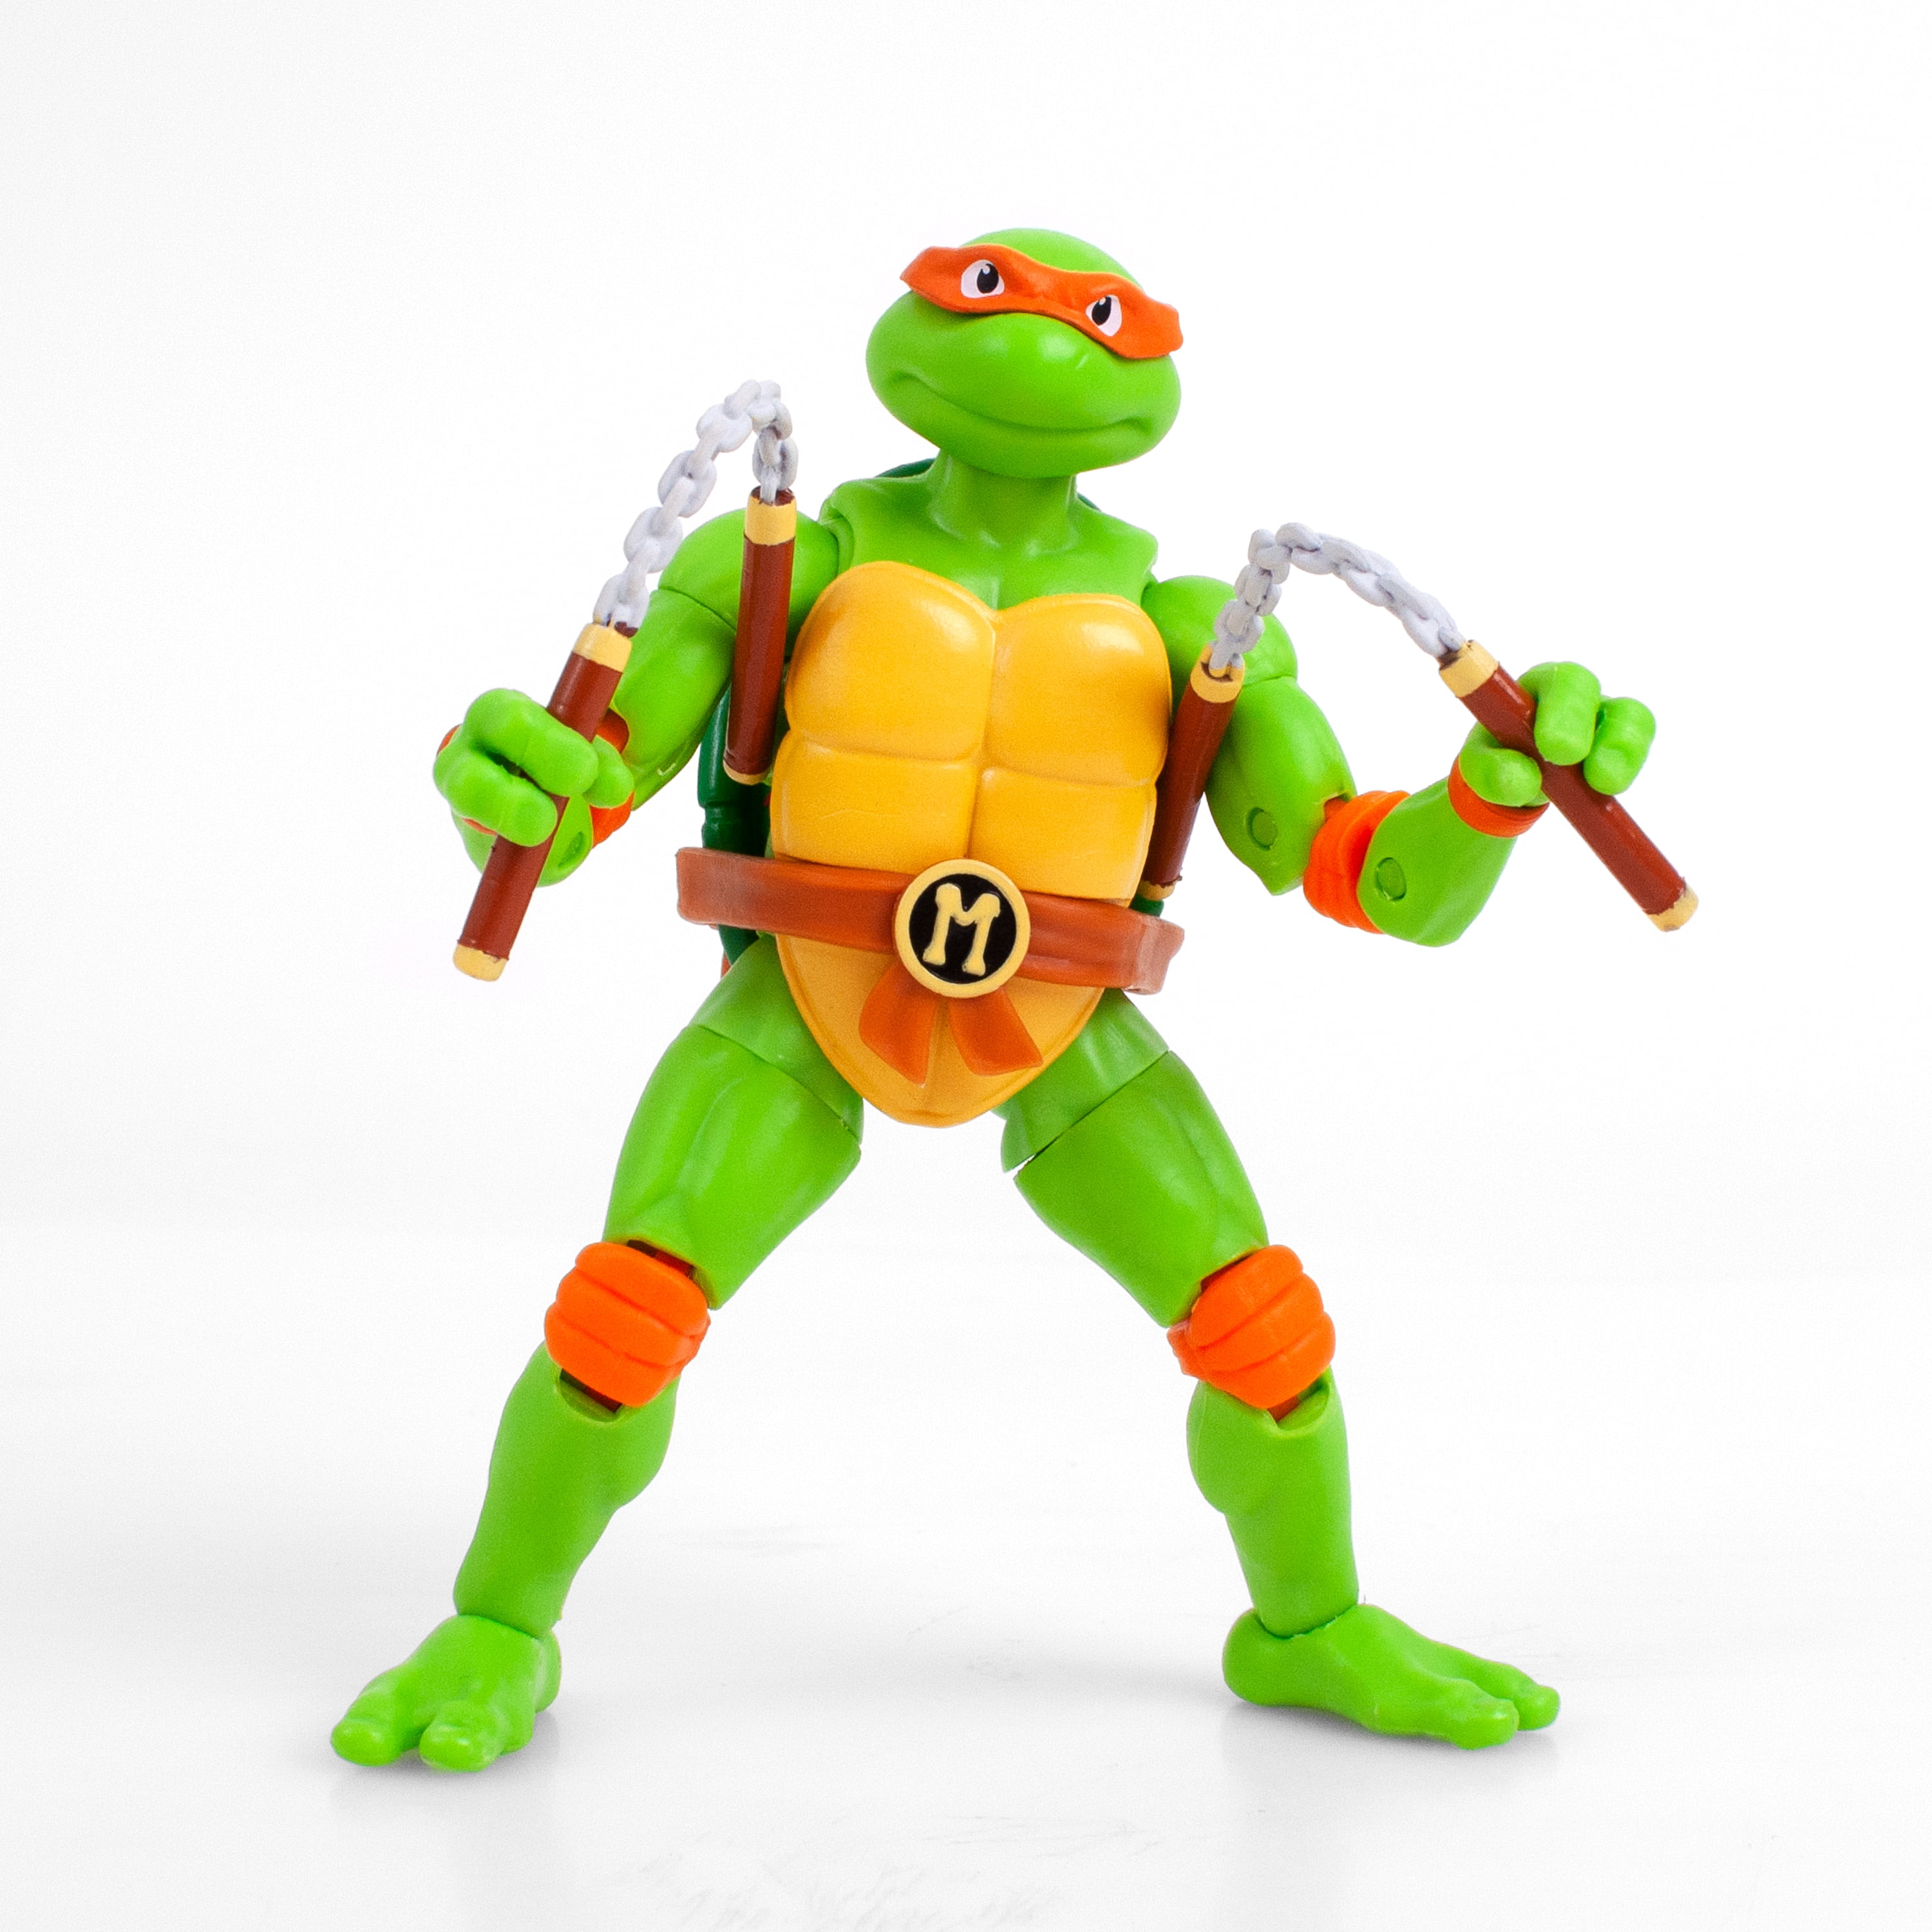 FACTORY SEALED MEGA BLOKS TMNT Series 1 LEONARDO Teenage Mutant Ninja Turtles 